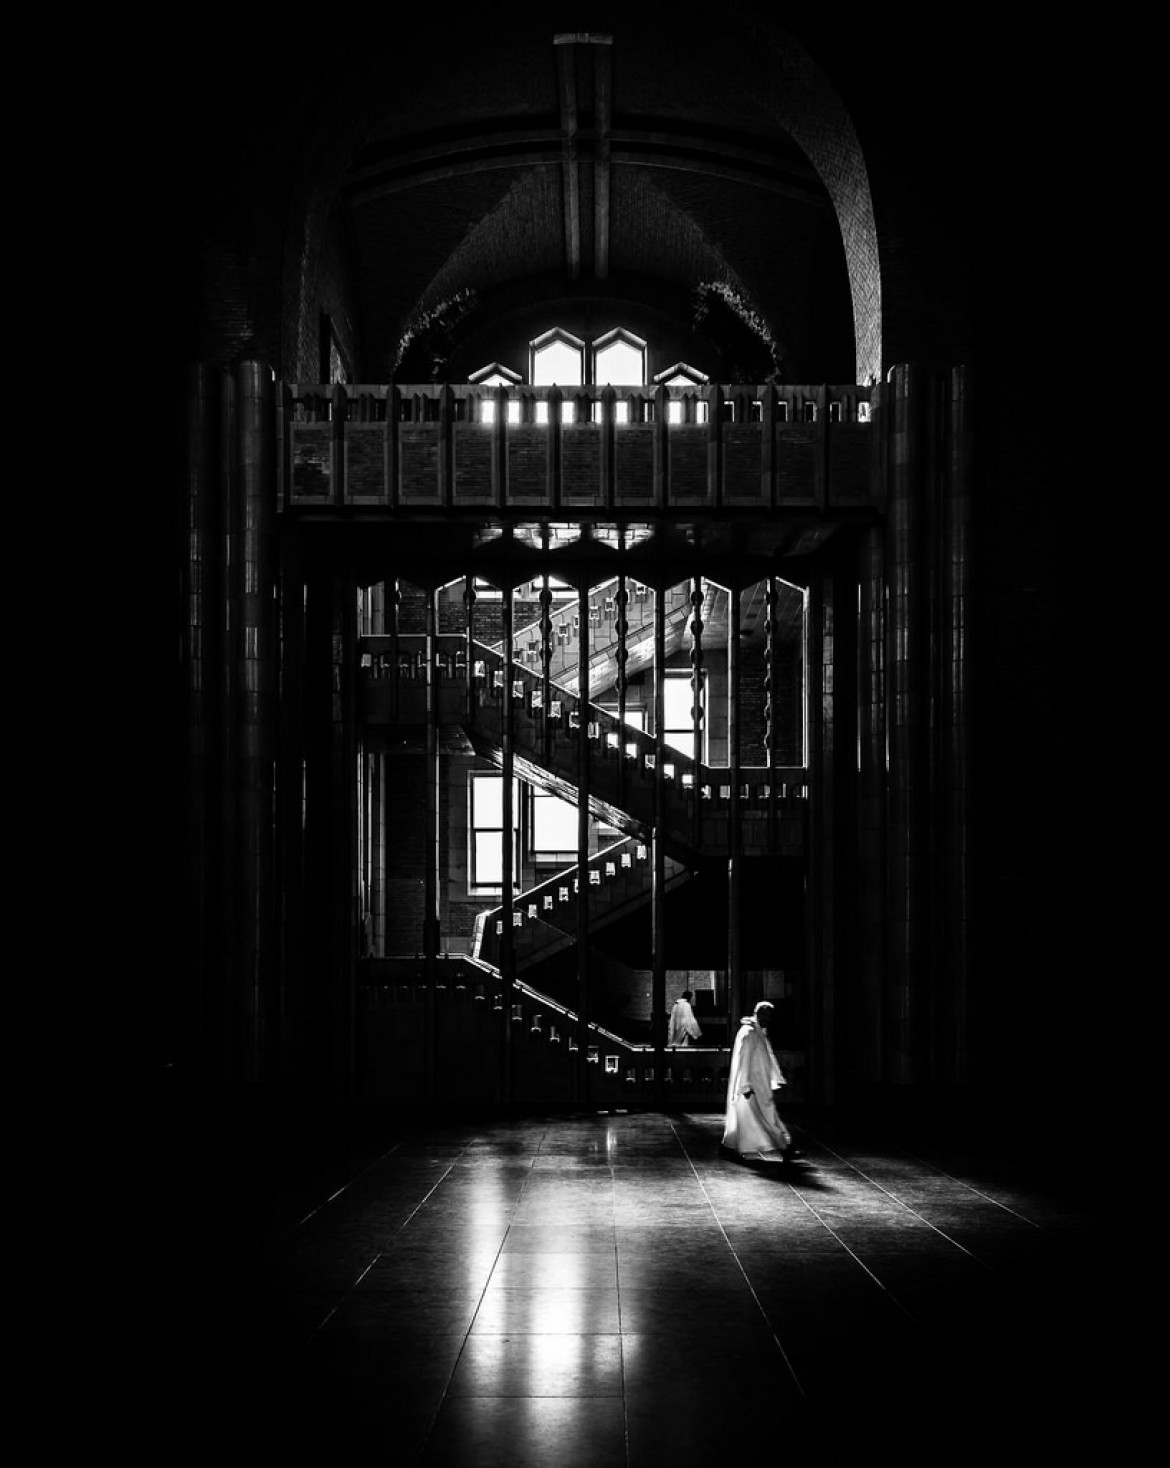 fot. Koen Jacobs “Stairway To Heaven“ 